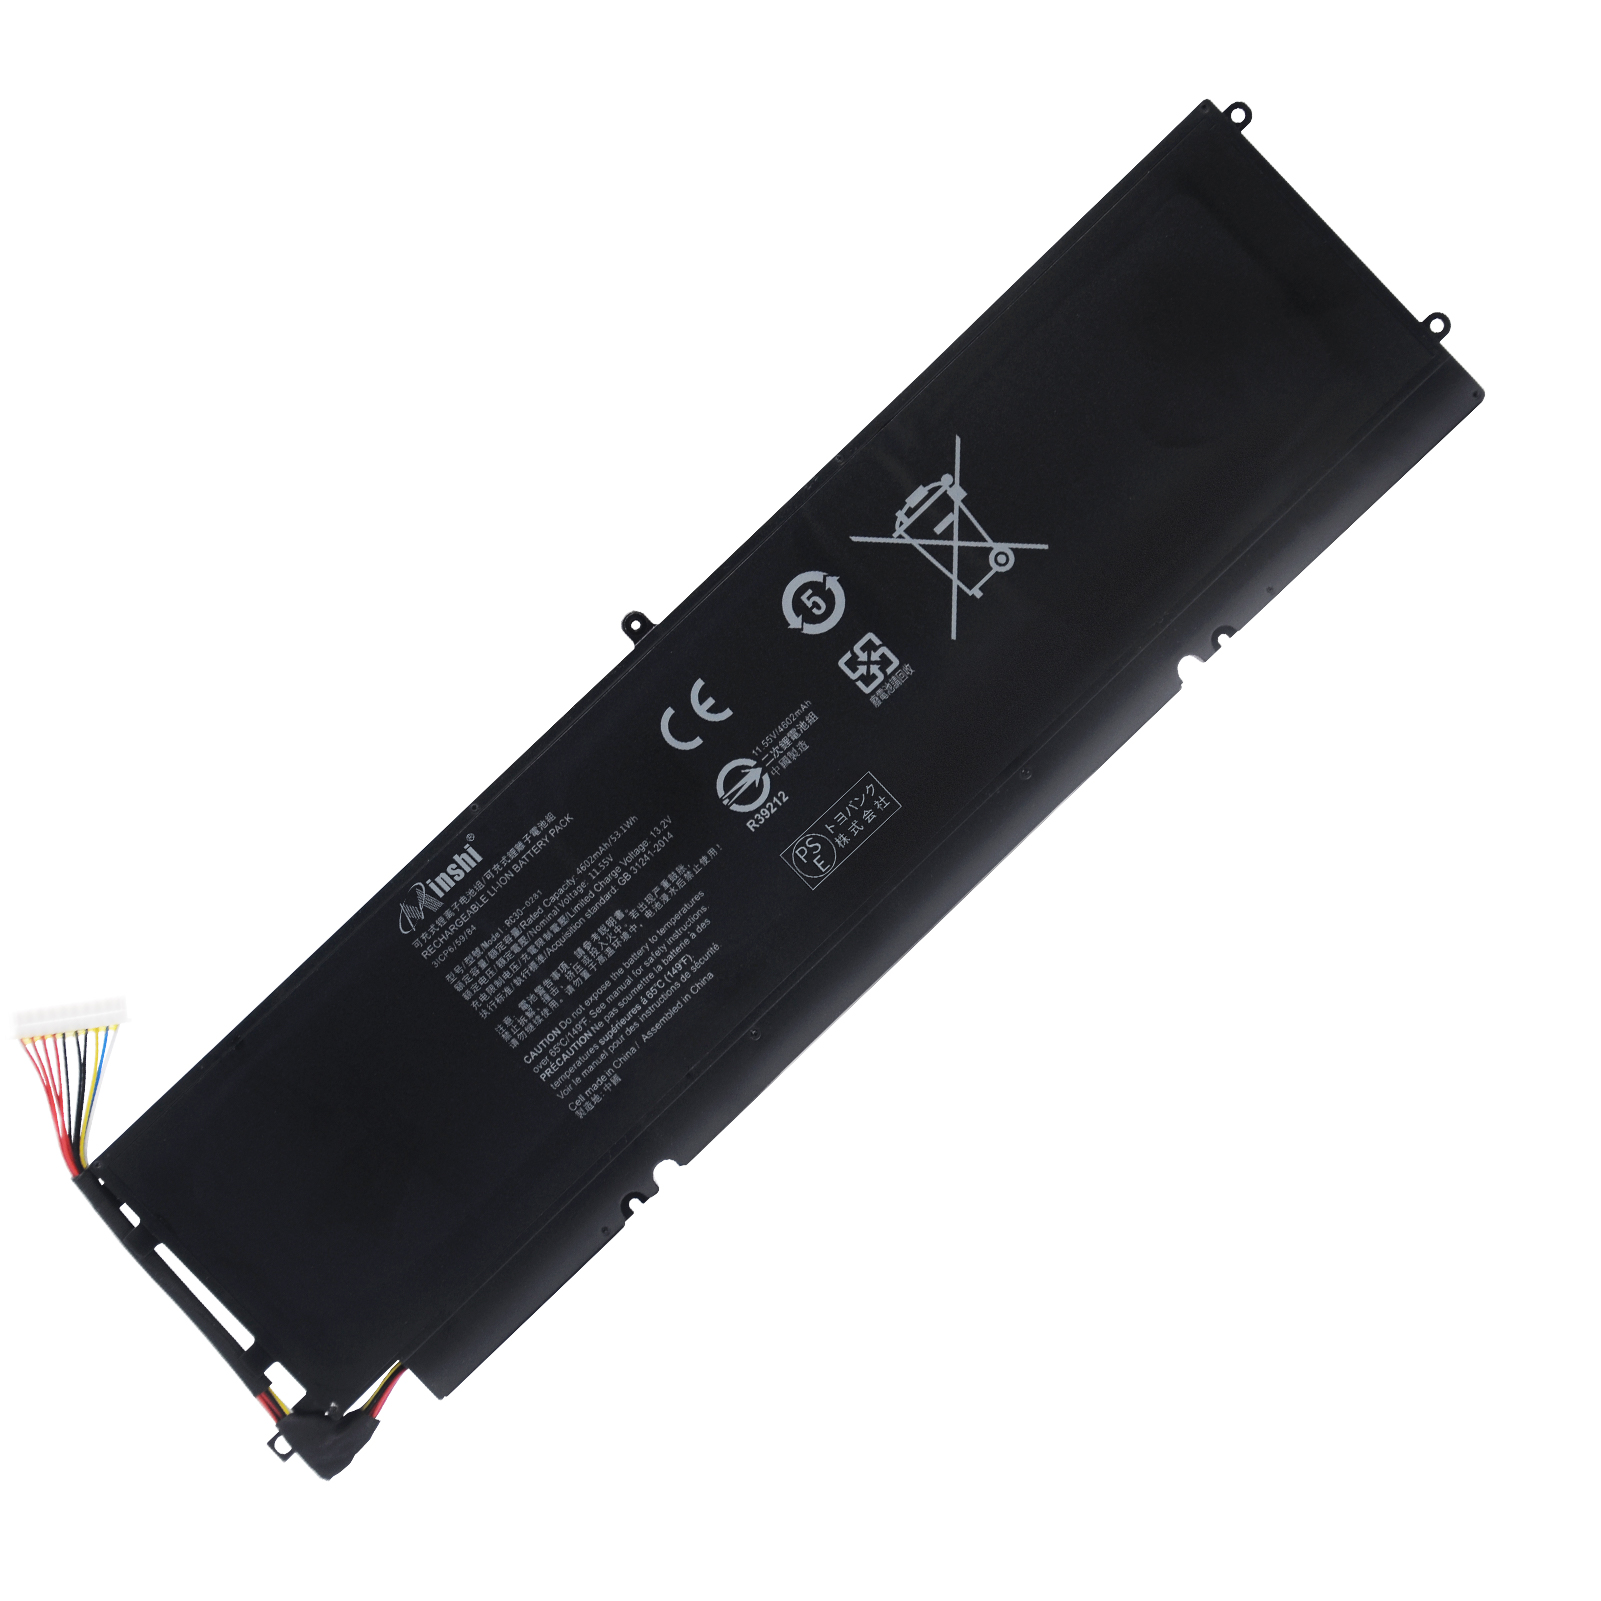 【1年保証】 minshi RZ09-03101J72-R3J1 RZ09-0310 対応 互換バッテリー 高品質交換用バッテリー